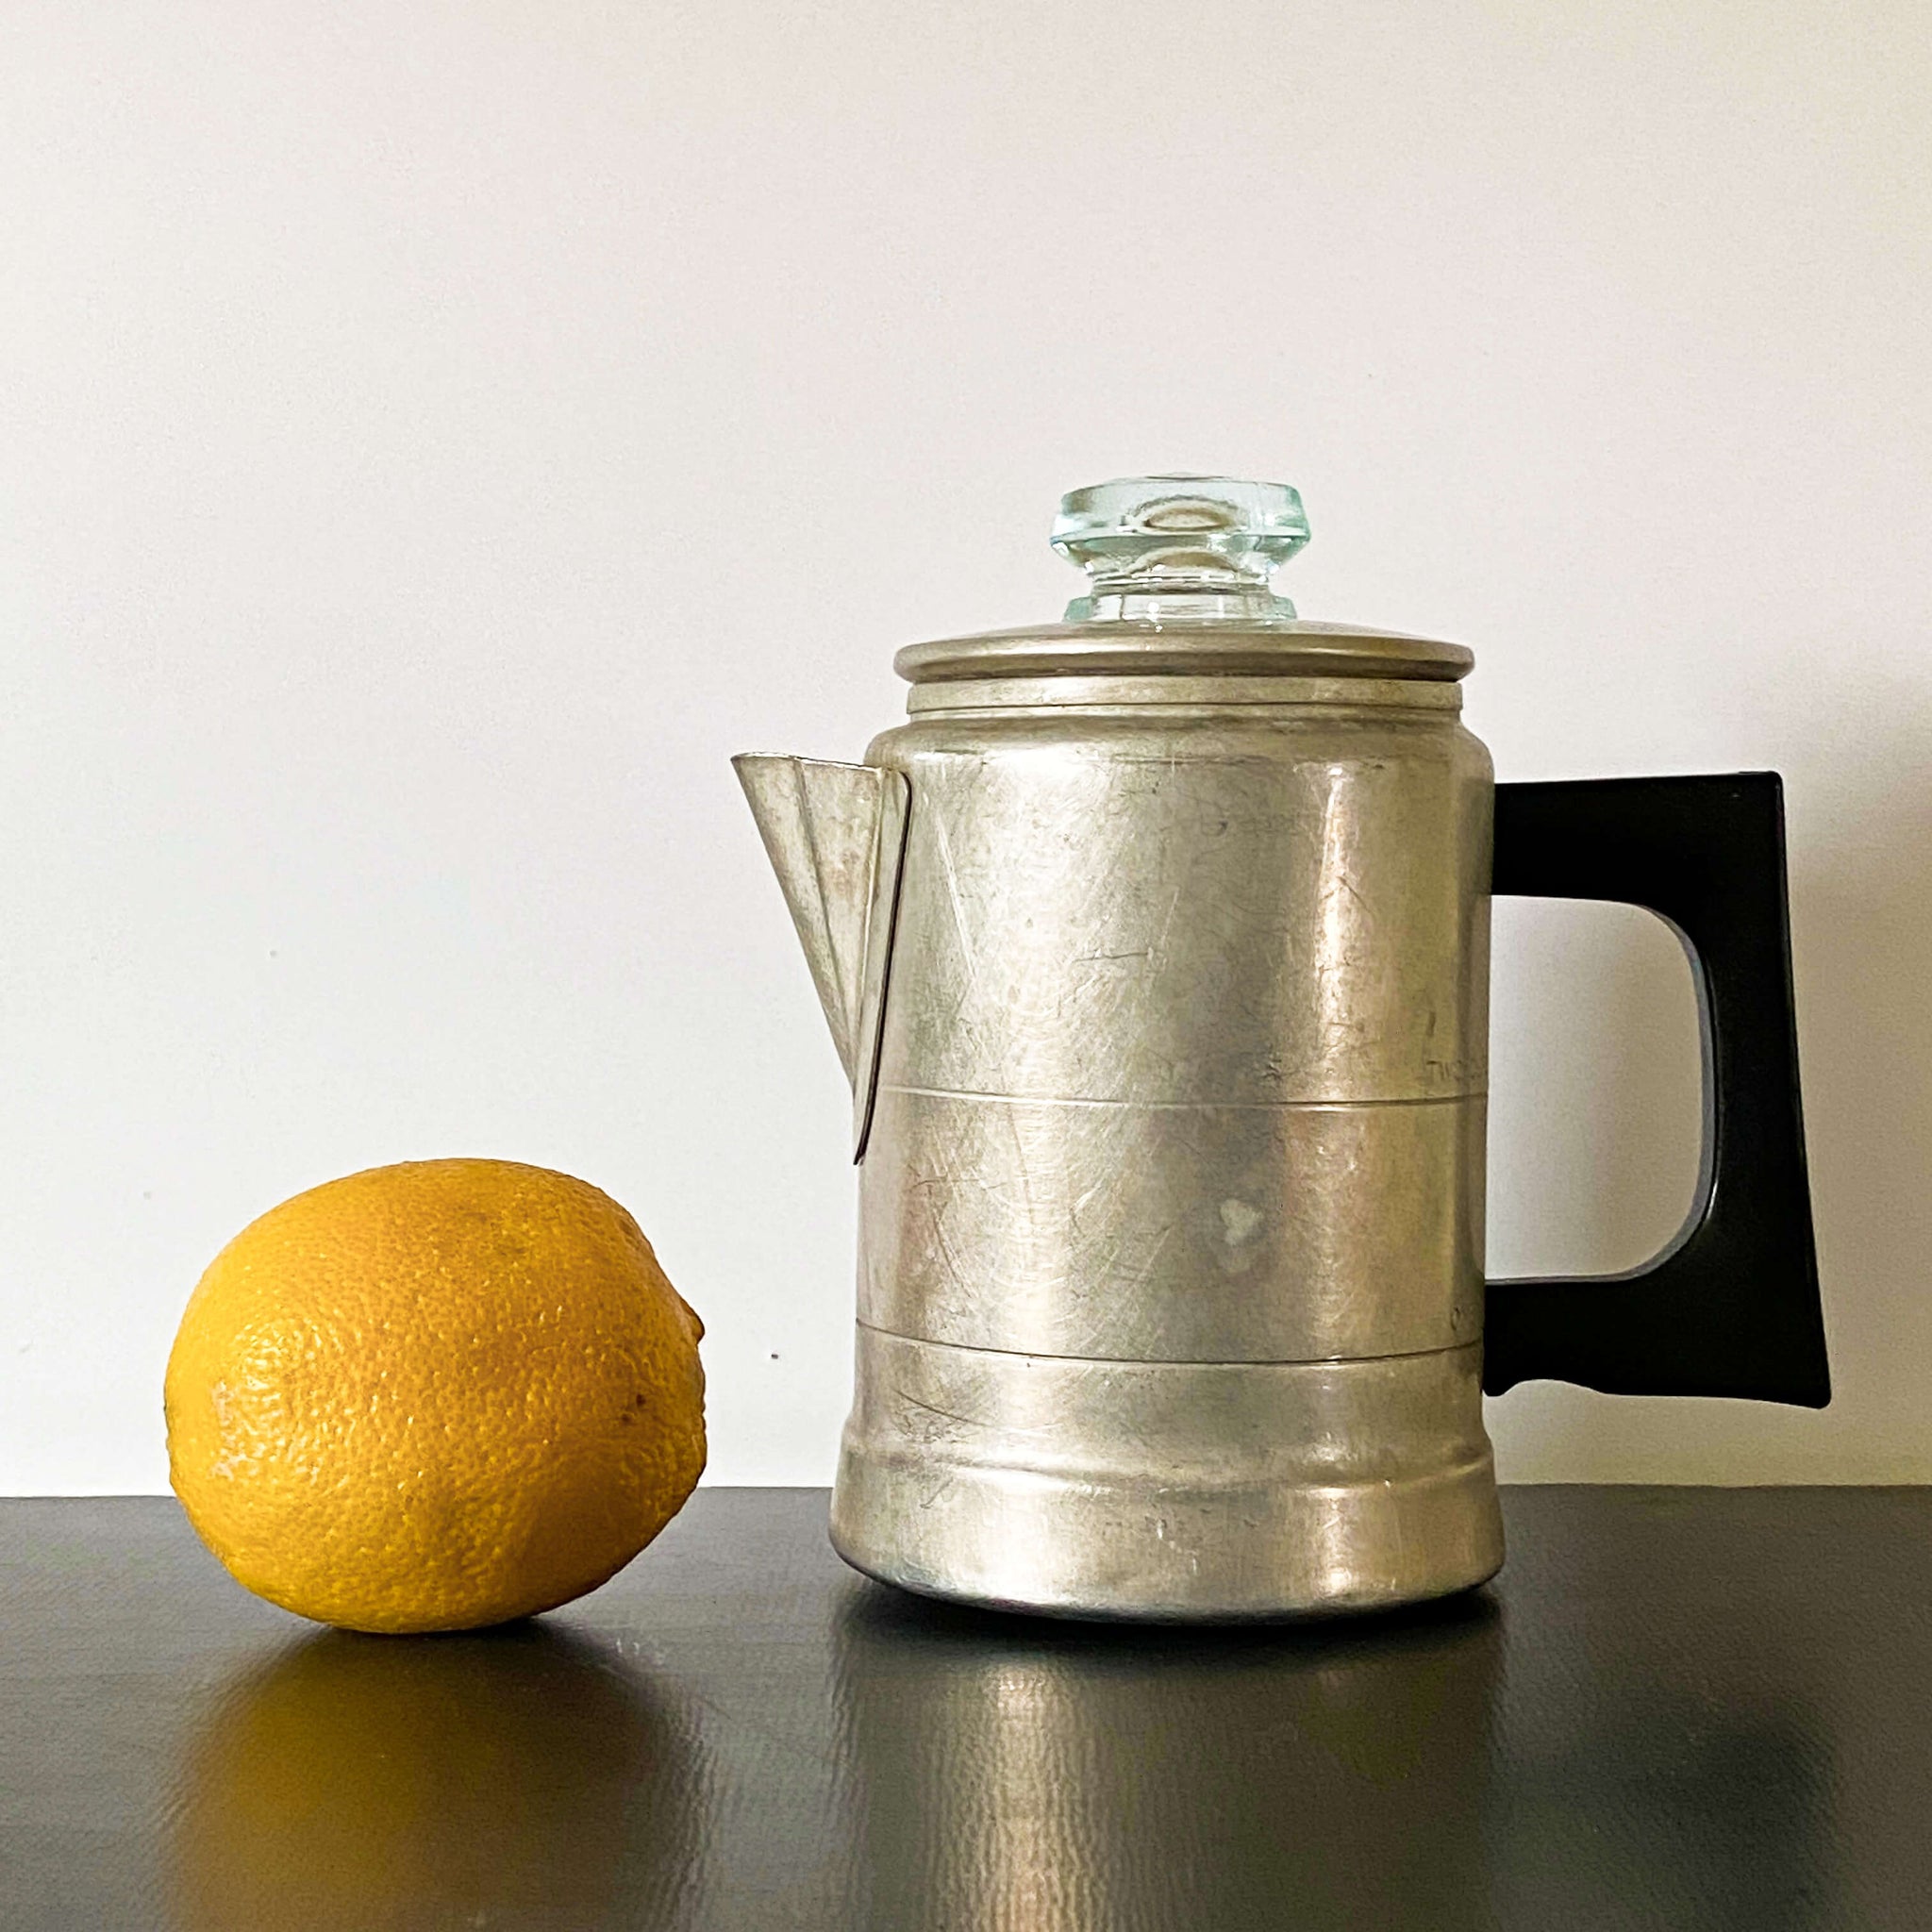 Vintage Mini Comet Aluminum Coffee Pot - 2 Cup Size